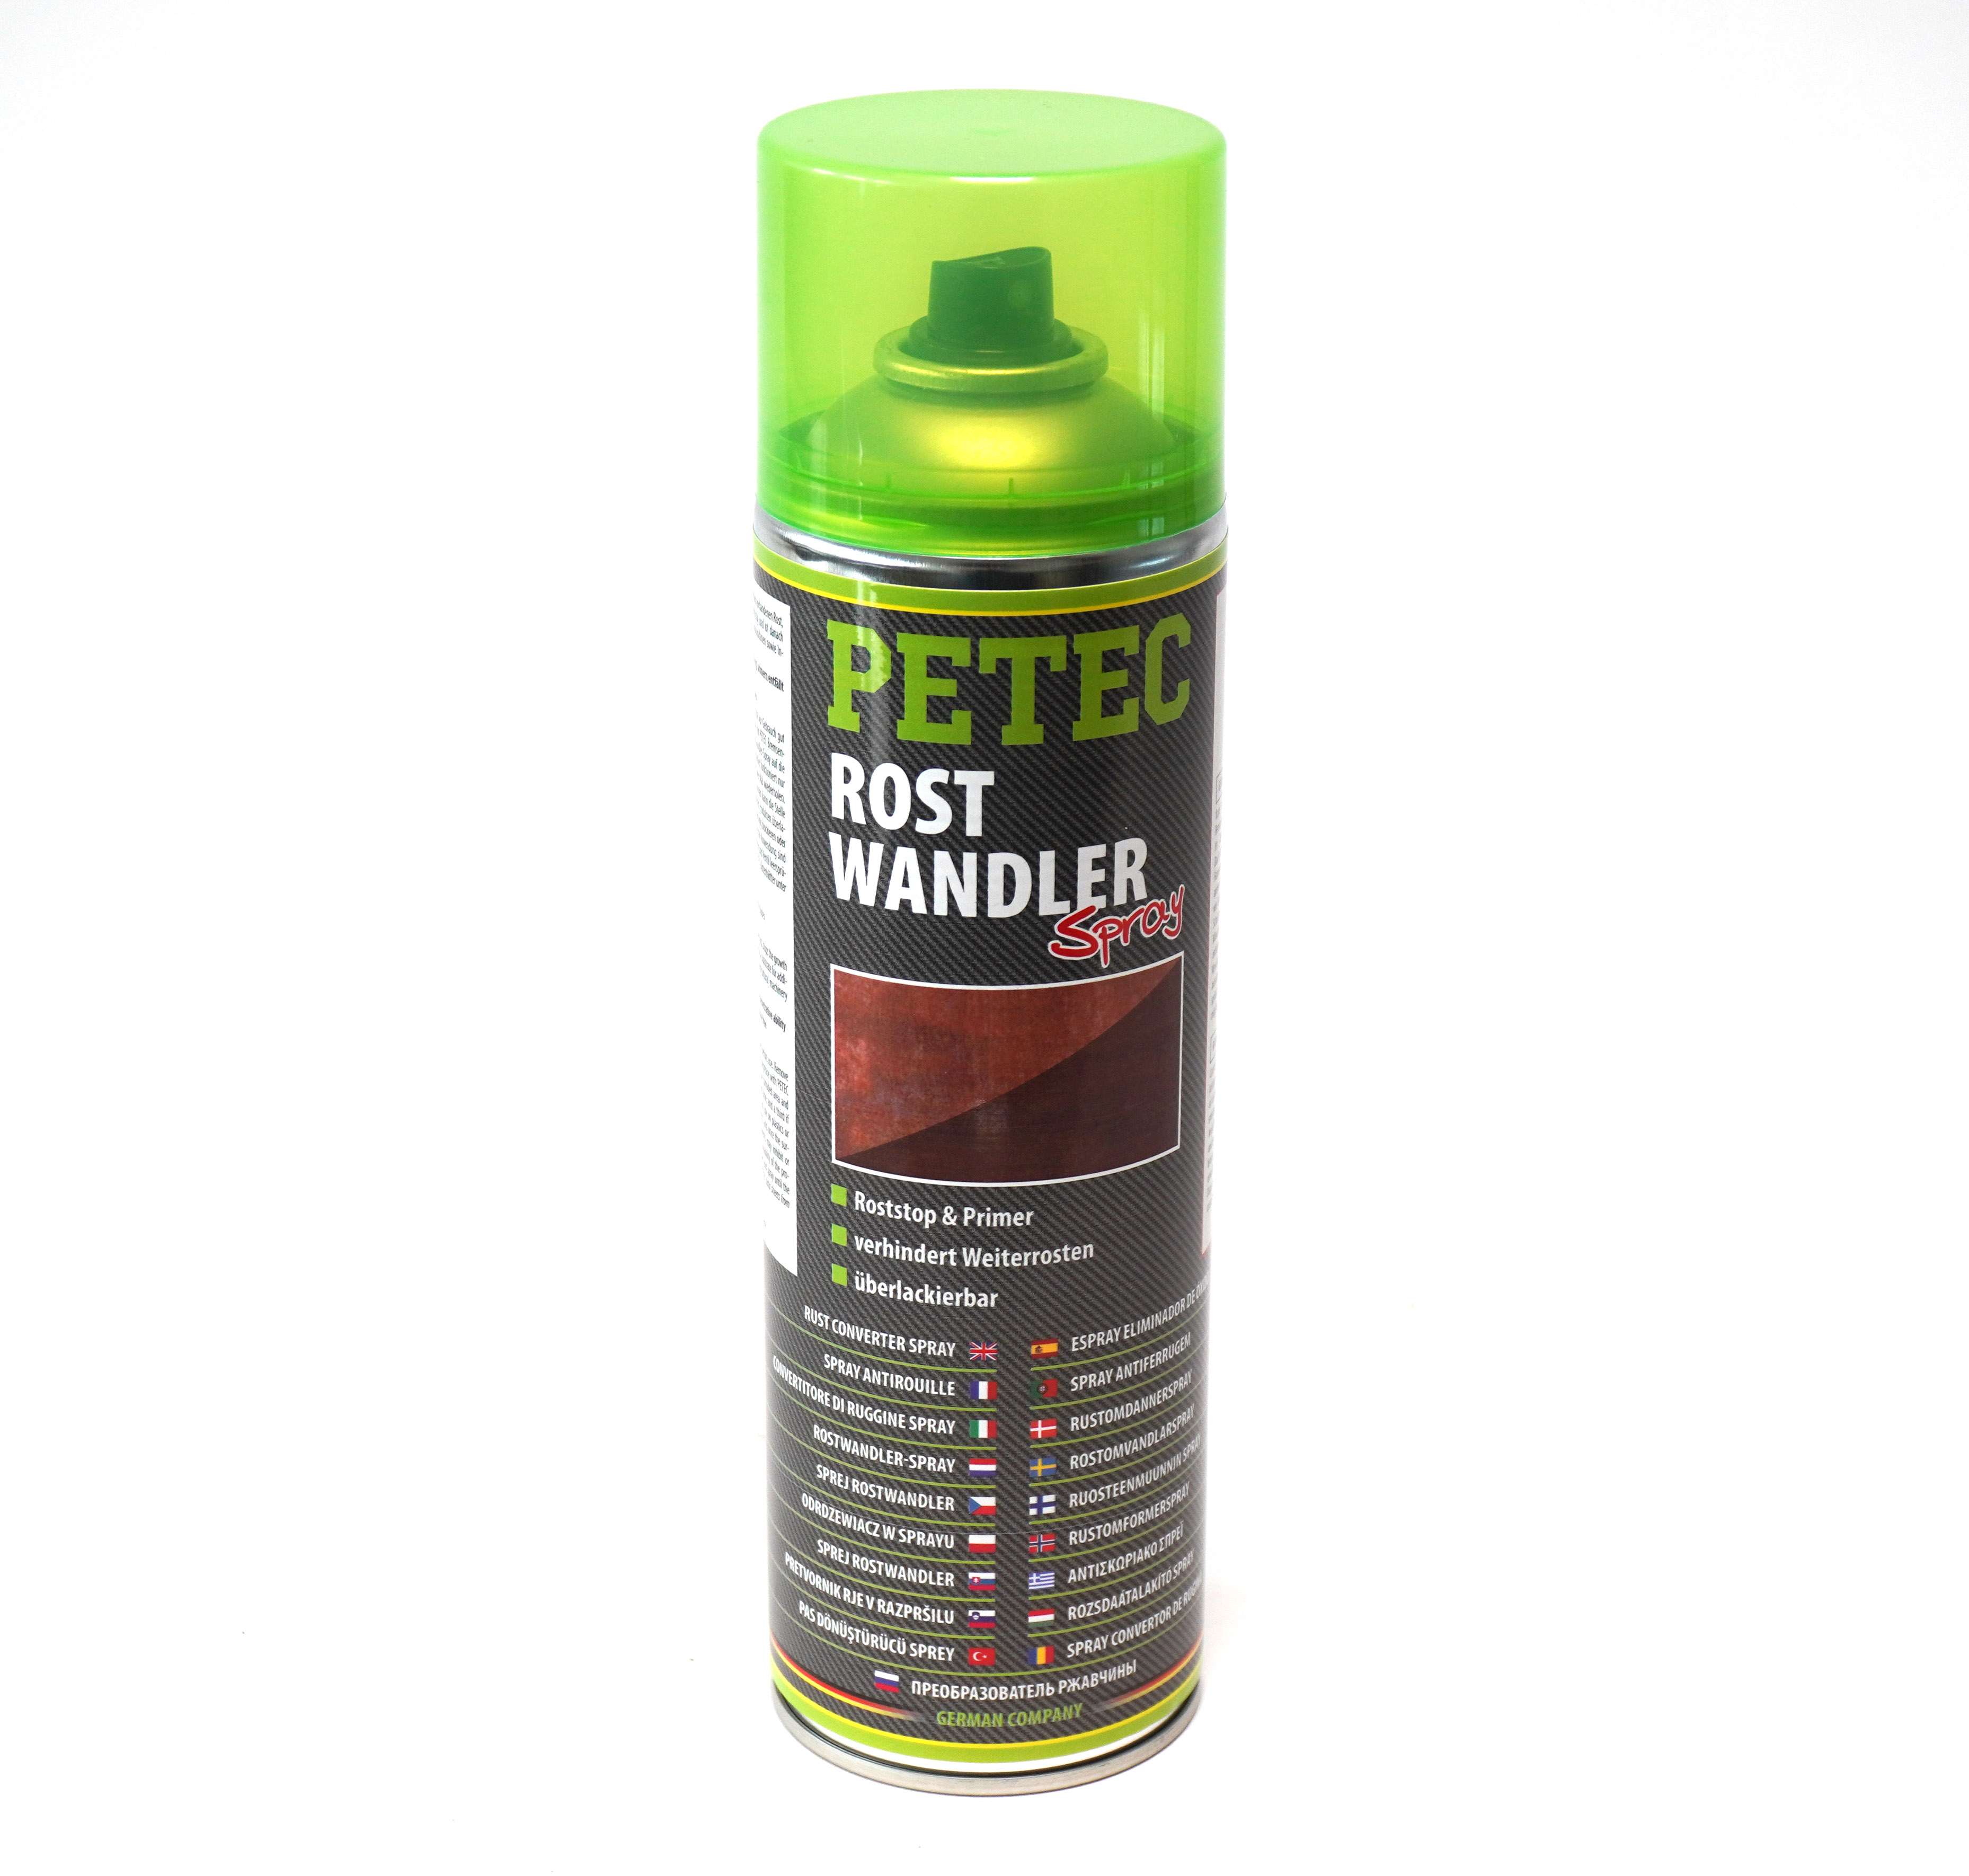 Rostwandler Spray - PETEC 500 ml